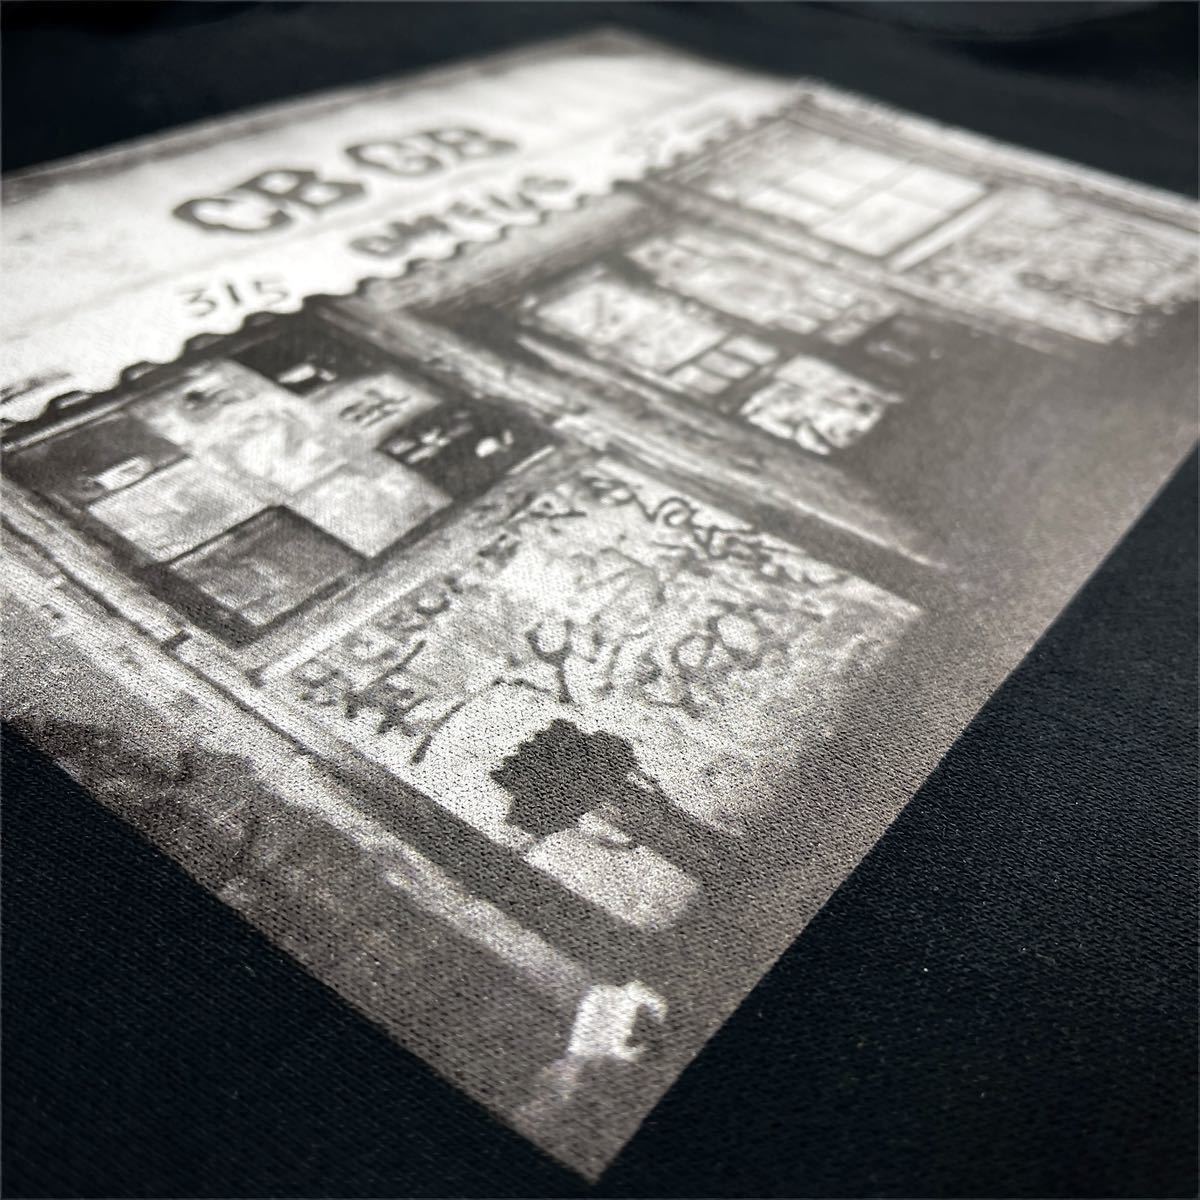 新品 CBGB ラモーンズ パティスミス ブロンディ ニューヨーク パンク ニューウェーブ クラブ ライブハウス パーカー ユニセックス Mサイズ